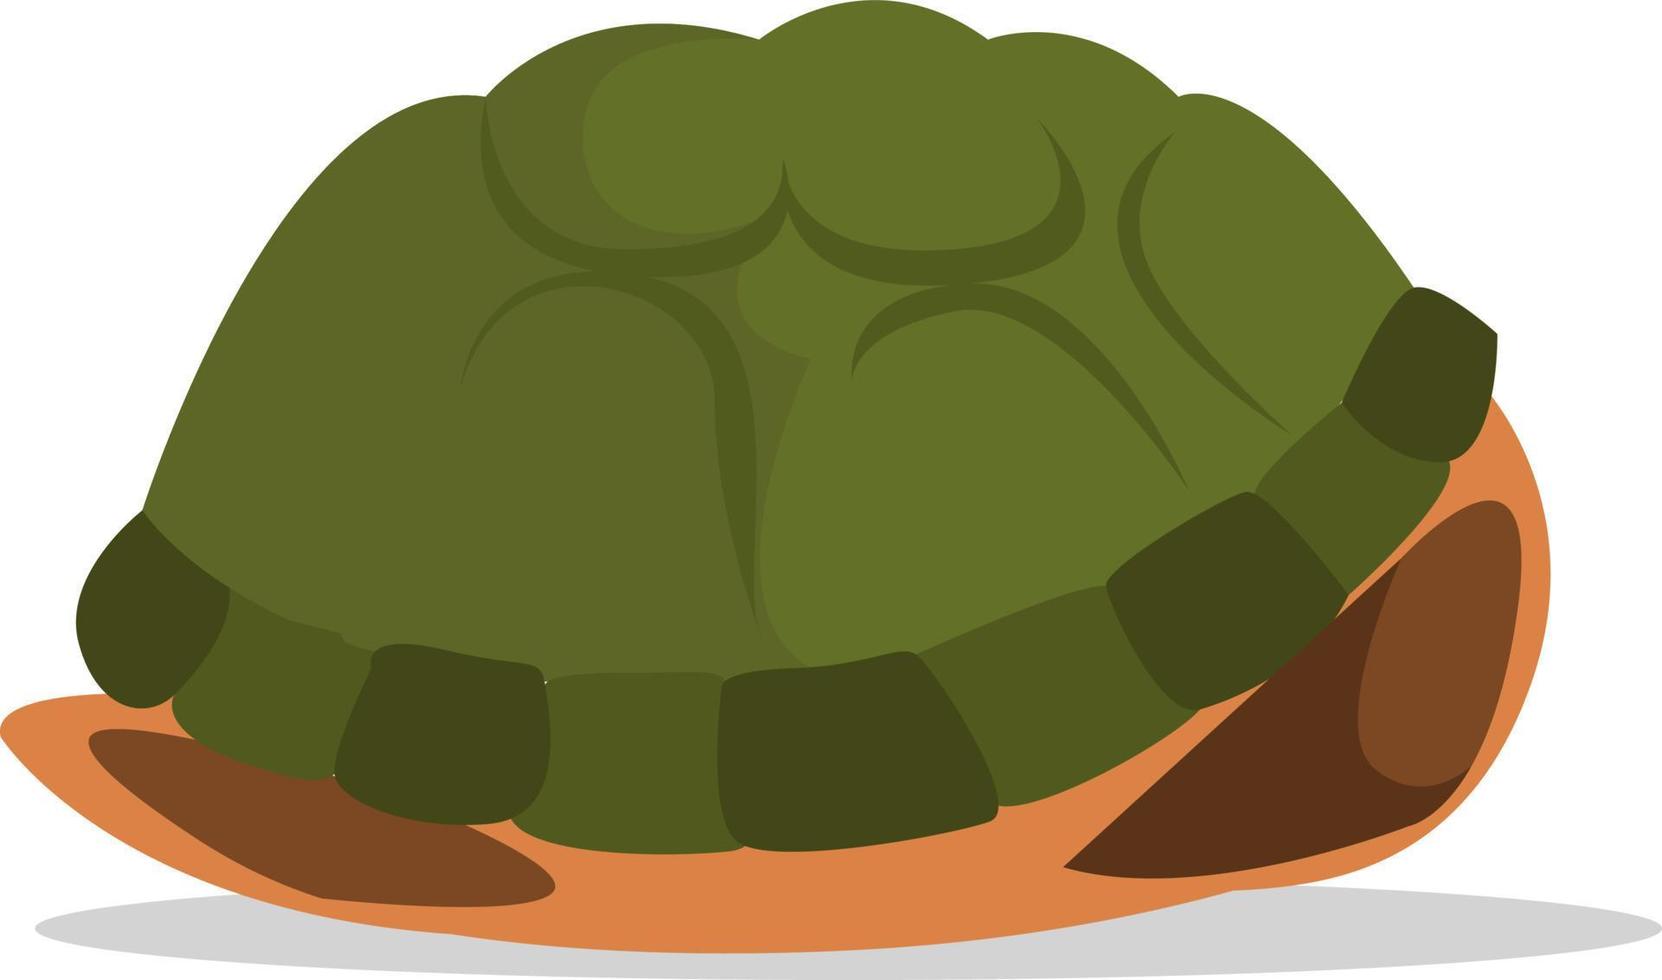 caparazón de tortuga, ilustración, vector sobre fondo blanco